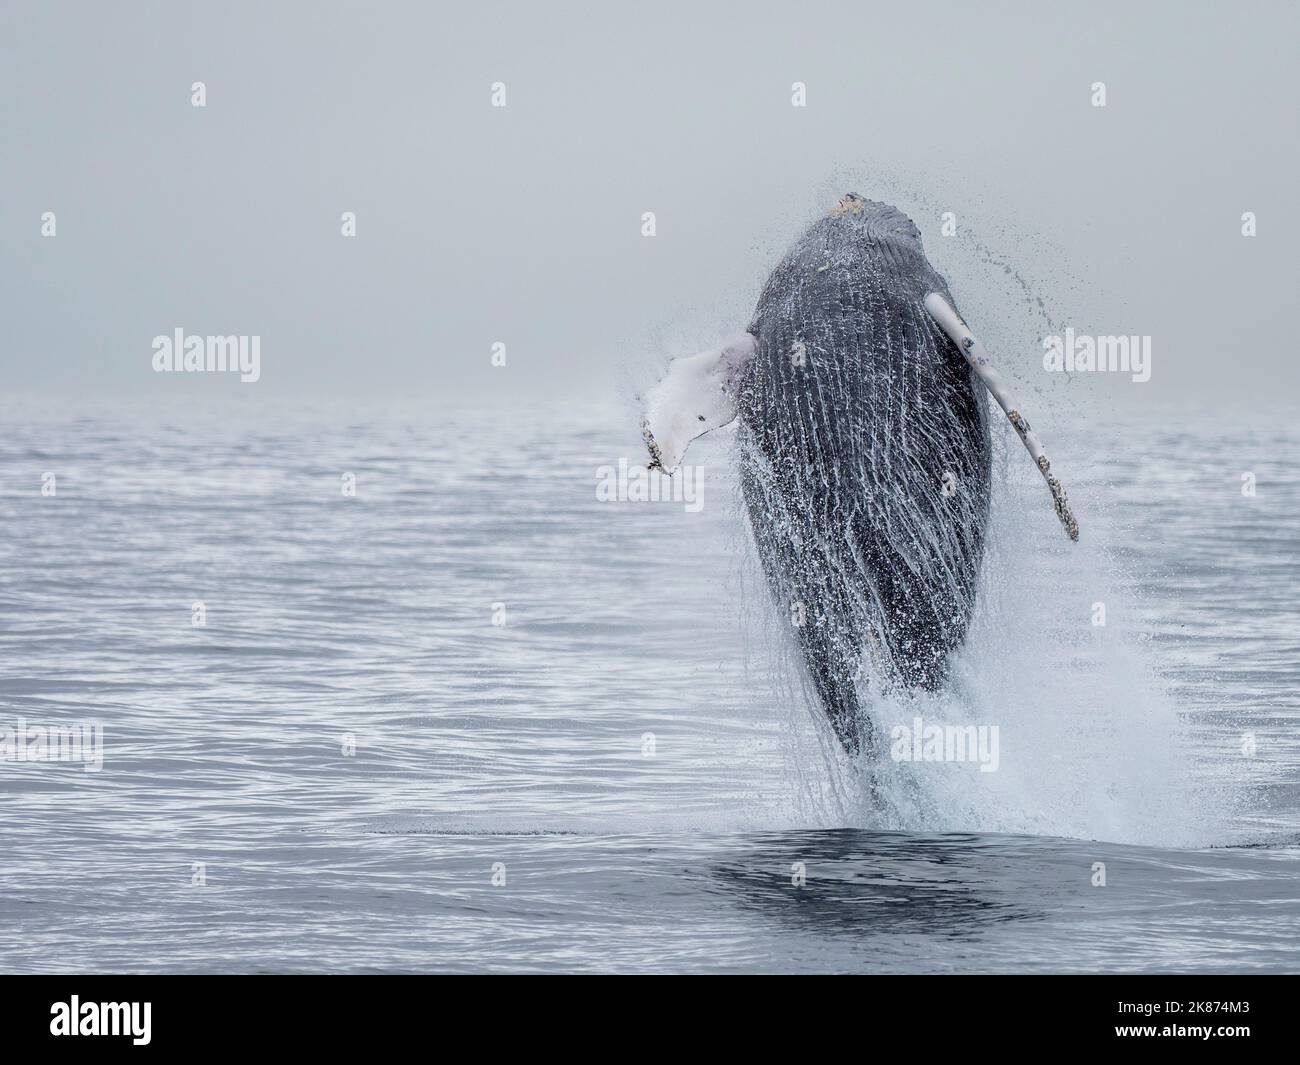 Une baleine à bosse adulte (Megaptera novaeangliae) qui braque dans le parc national Kenai Fjords, Alaska, États-Unis d'Amérique, Amérique du Nord Banque D'Images